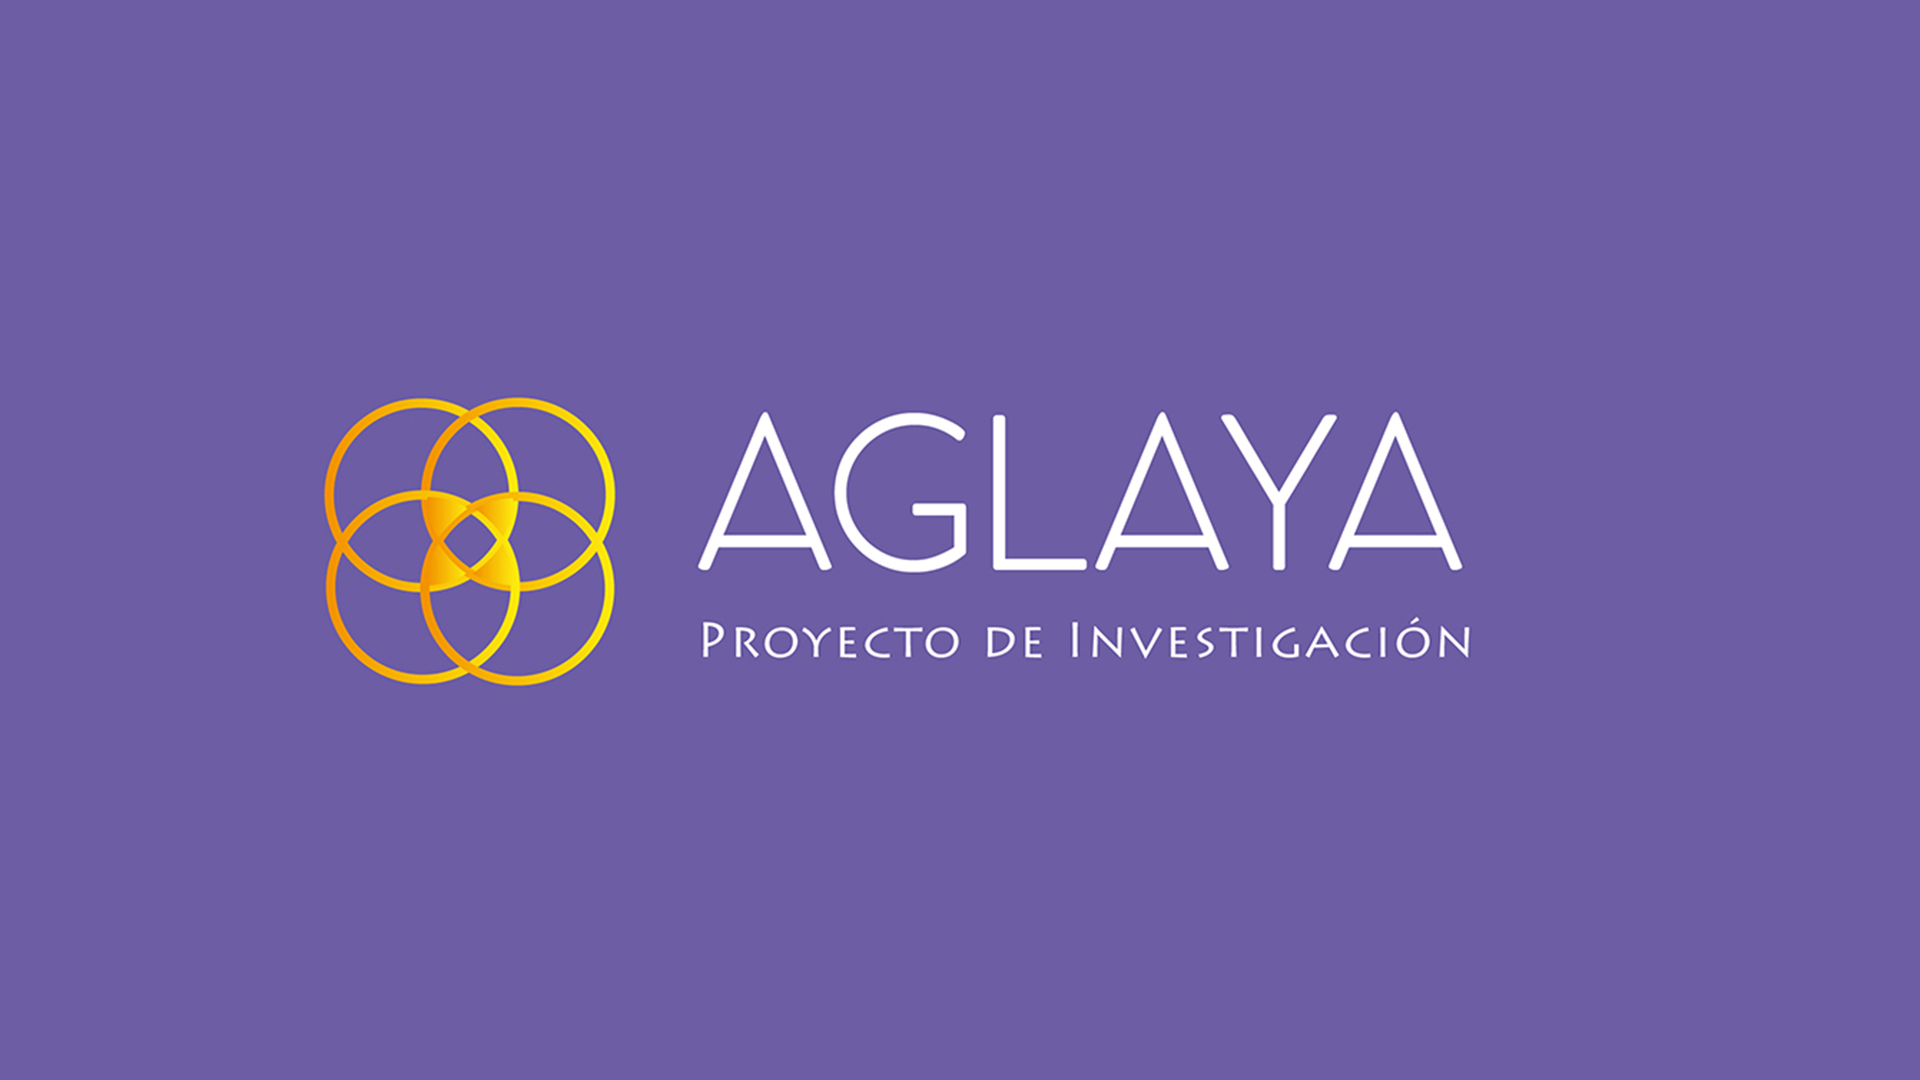 Comienza el proyecto AGLAYA, liderado por ACIS